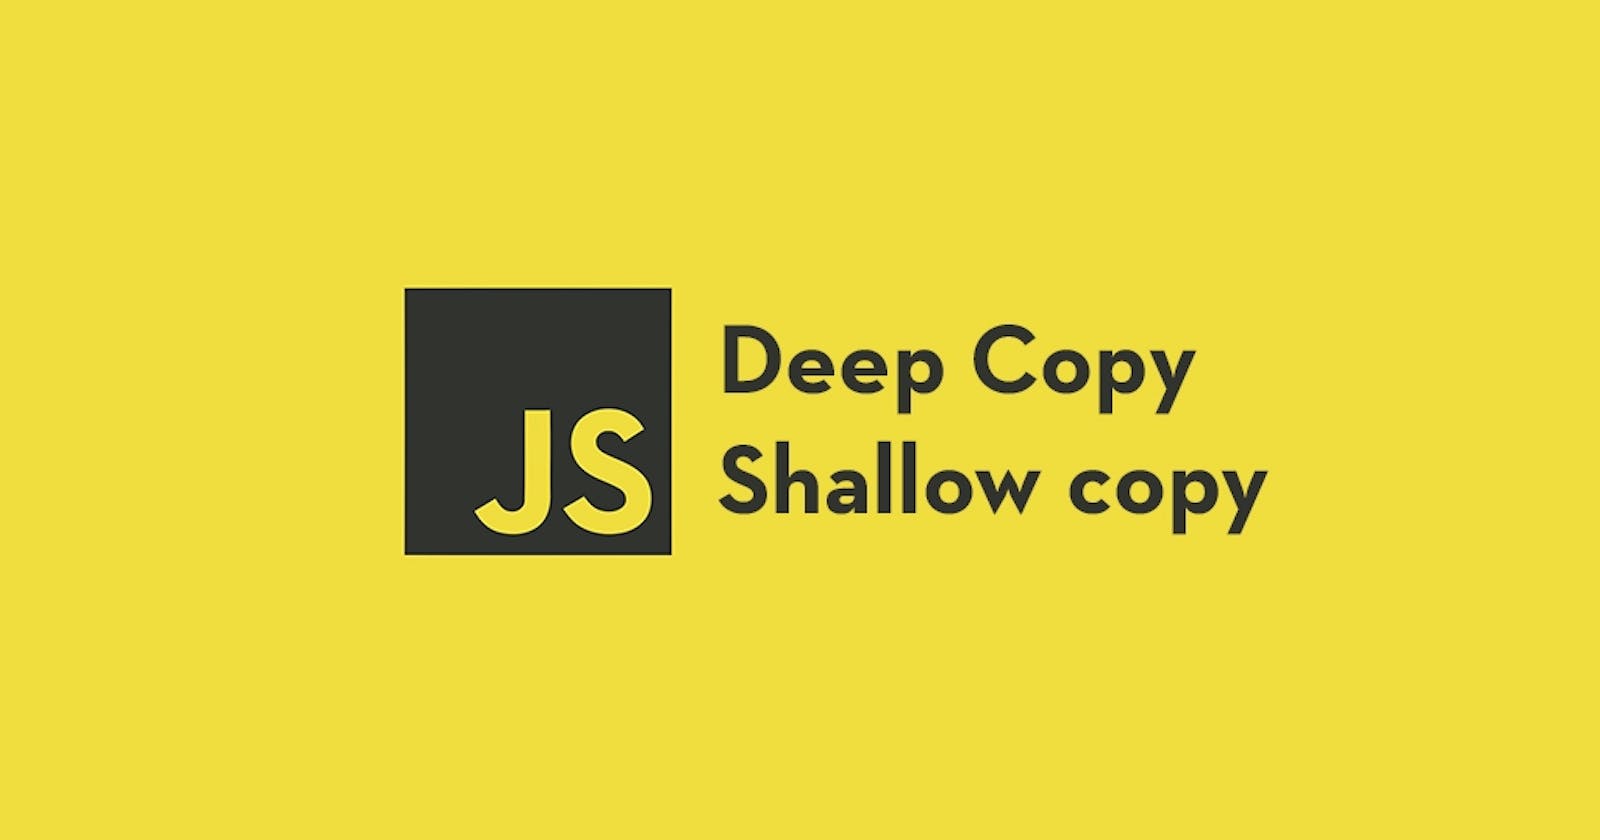 Deep copy VS Shallow copy